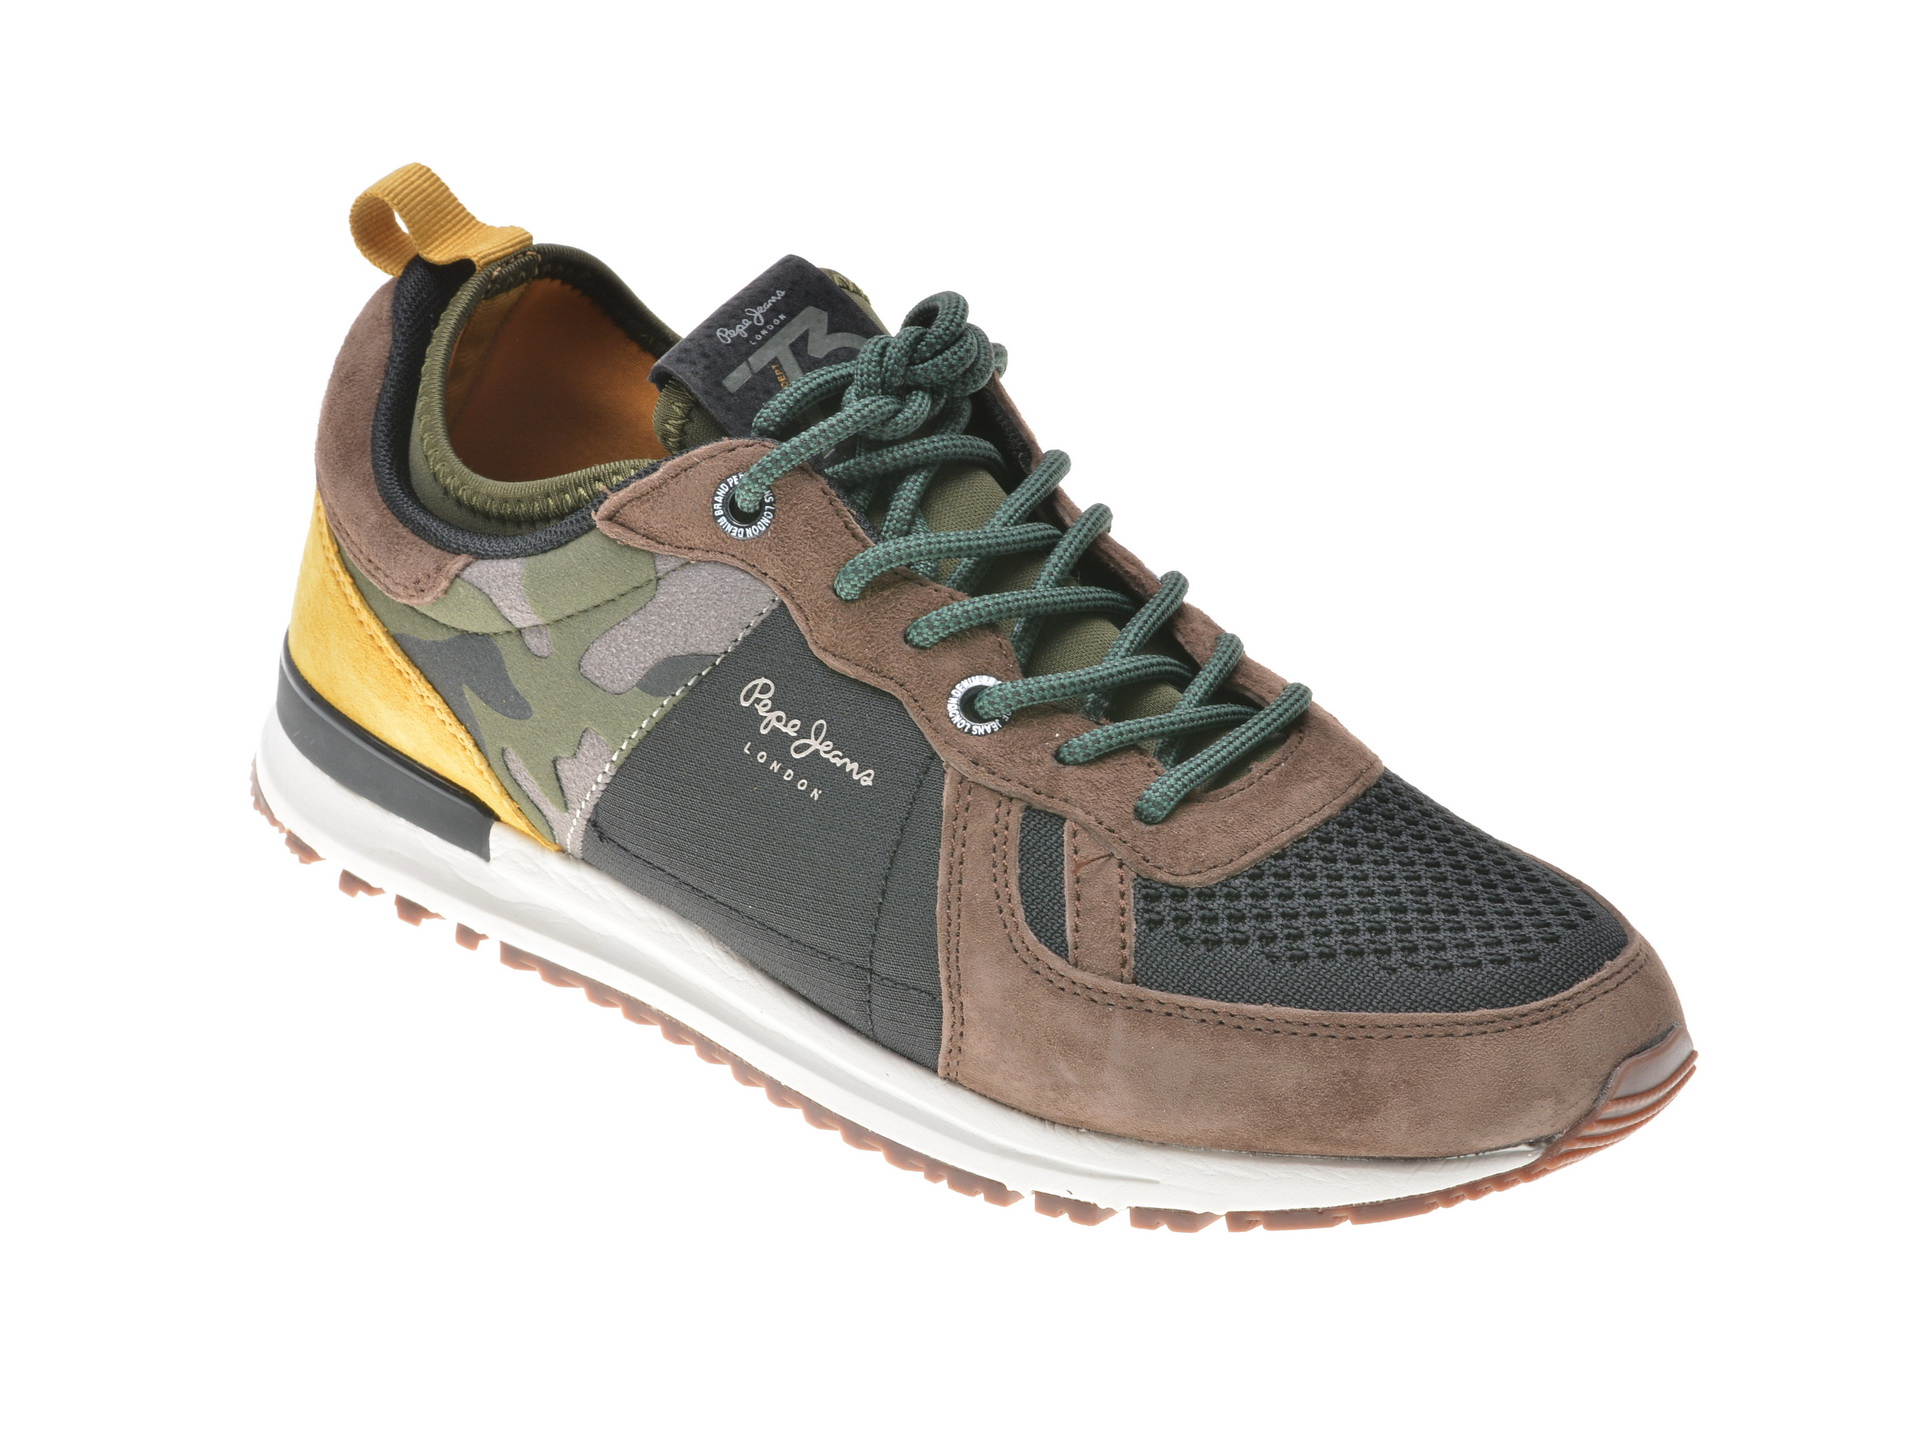 Pantofi sport PEPE JEANS multicolori, Ms30488, din piele intoarsa